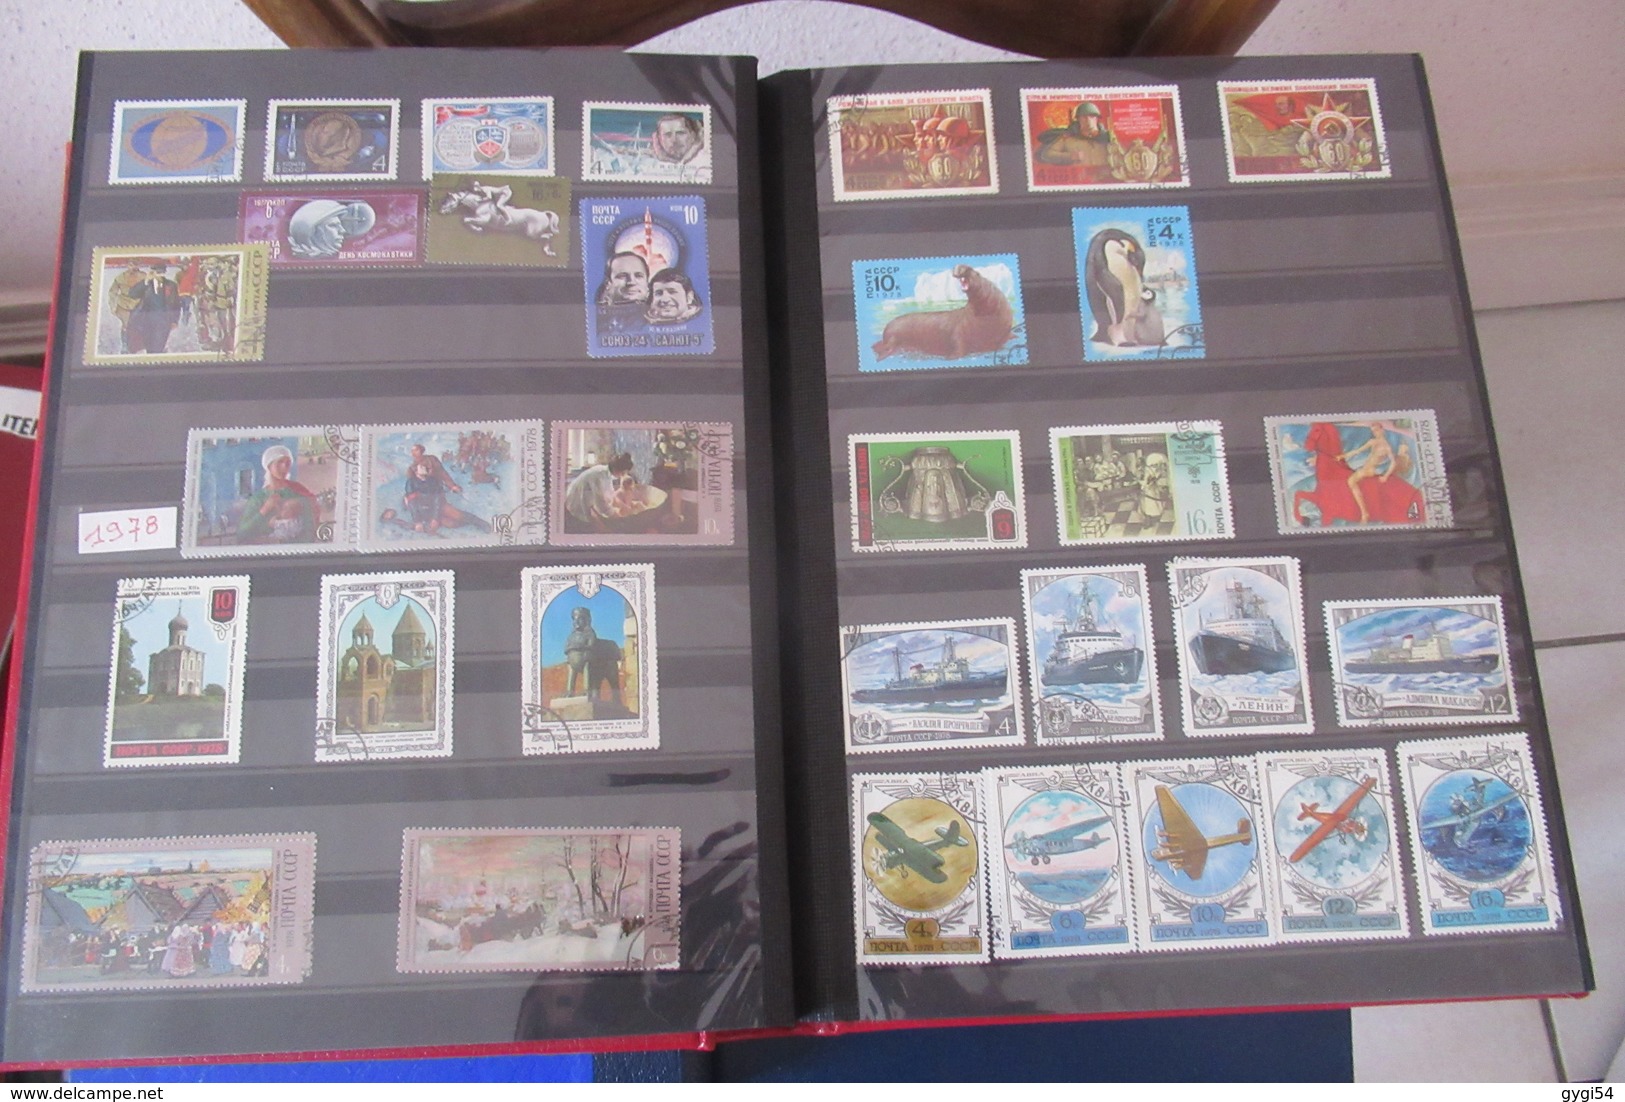 Collection Générale  Canada à Zaïre  Russie 1970 - 1988   ( magnifique classeur de 64 p )  74  scans